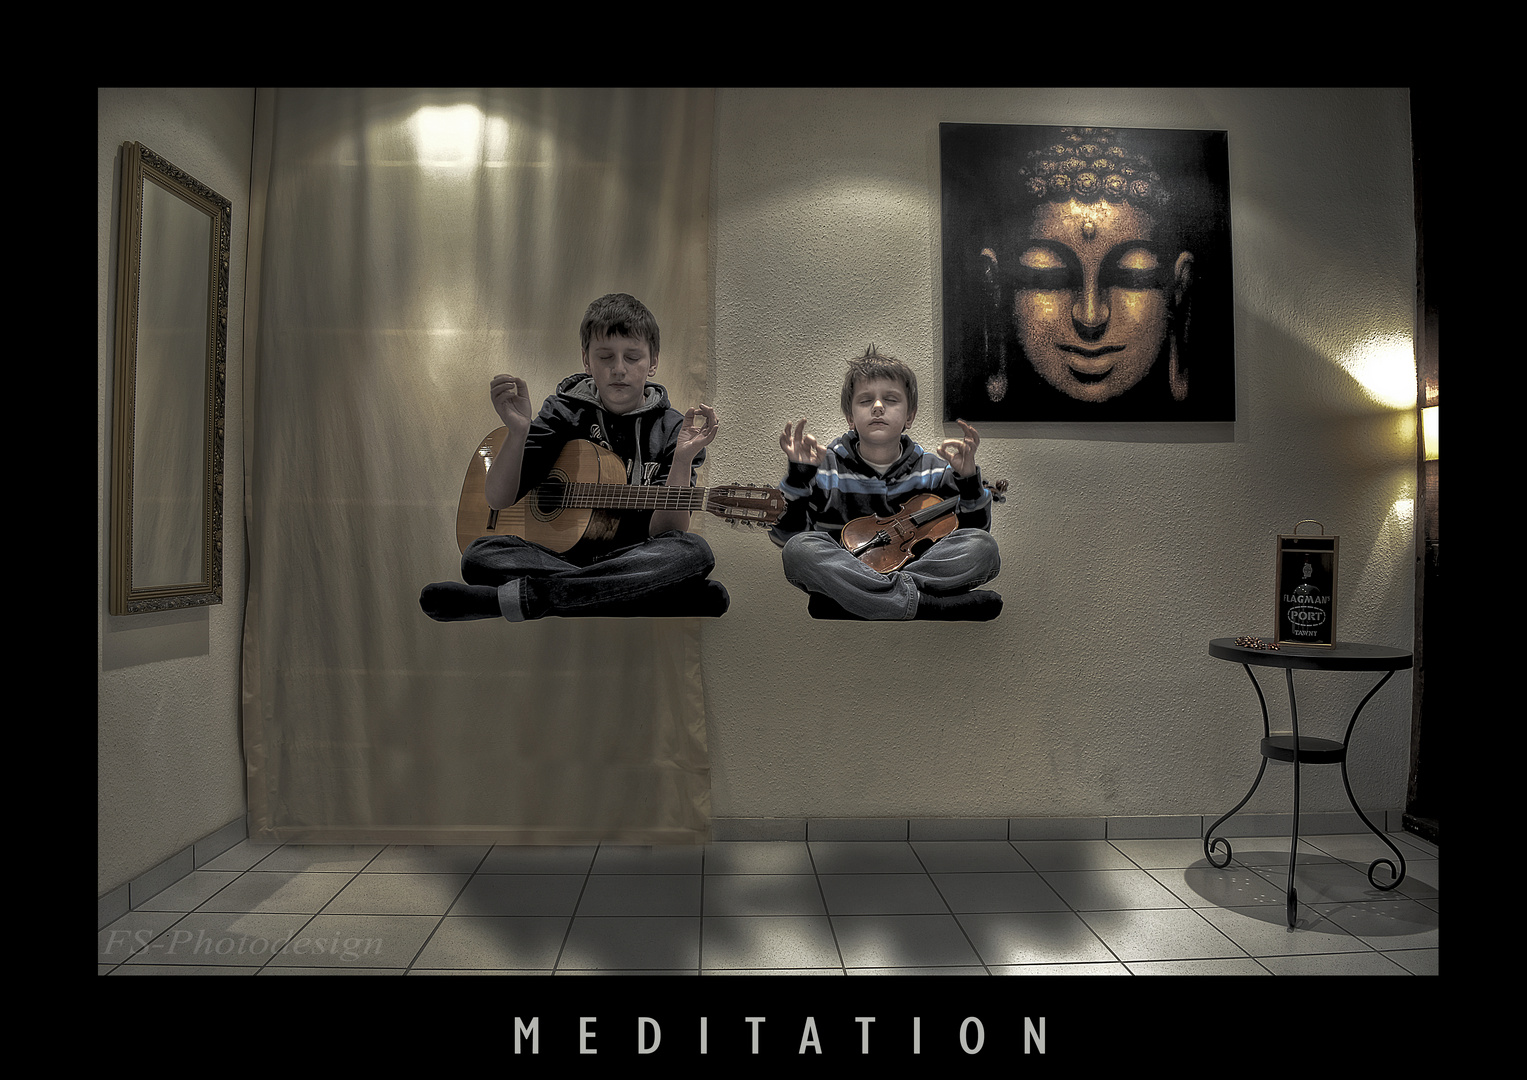 "Meditation"